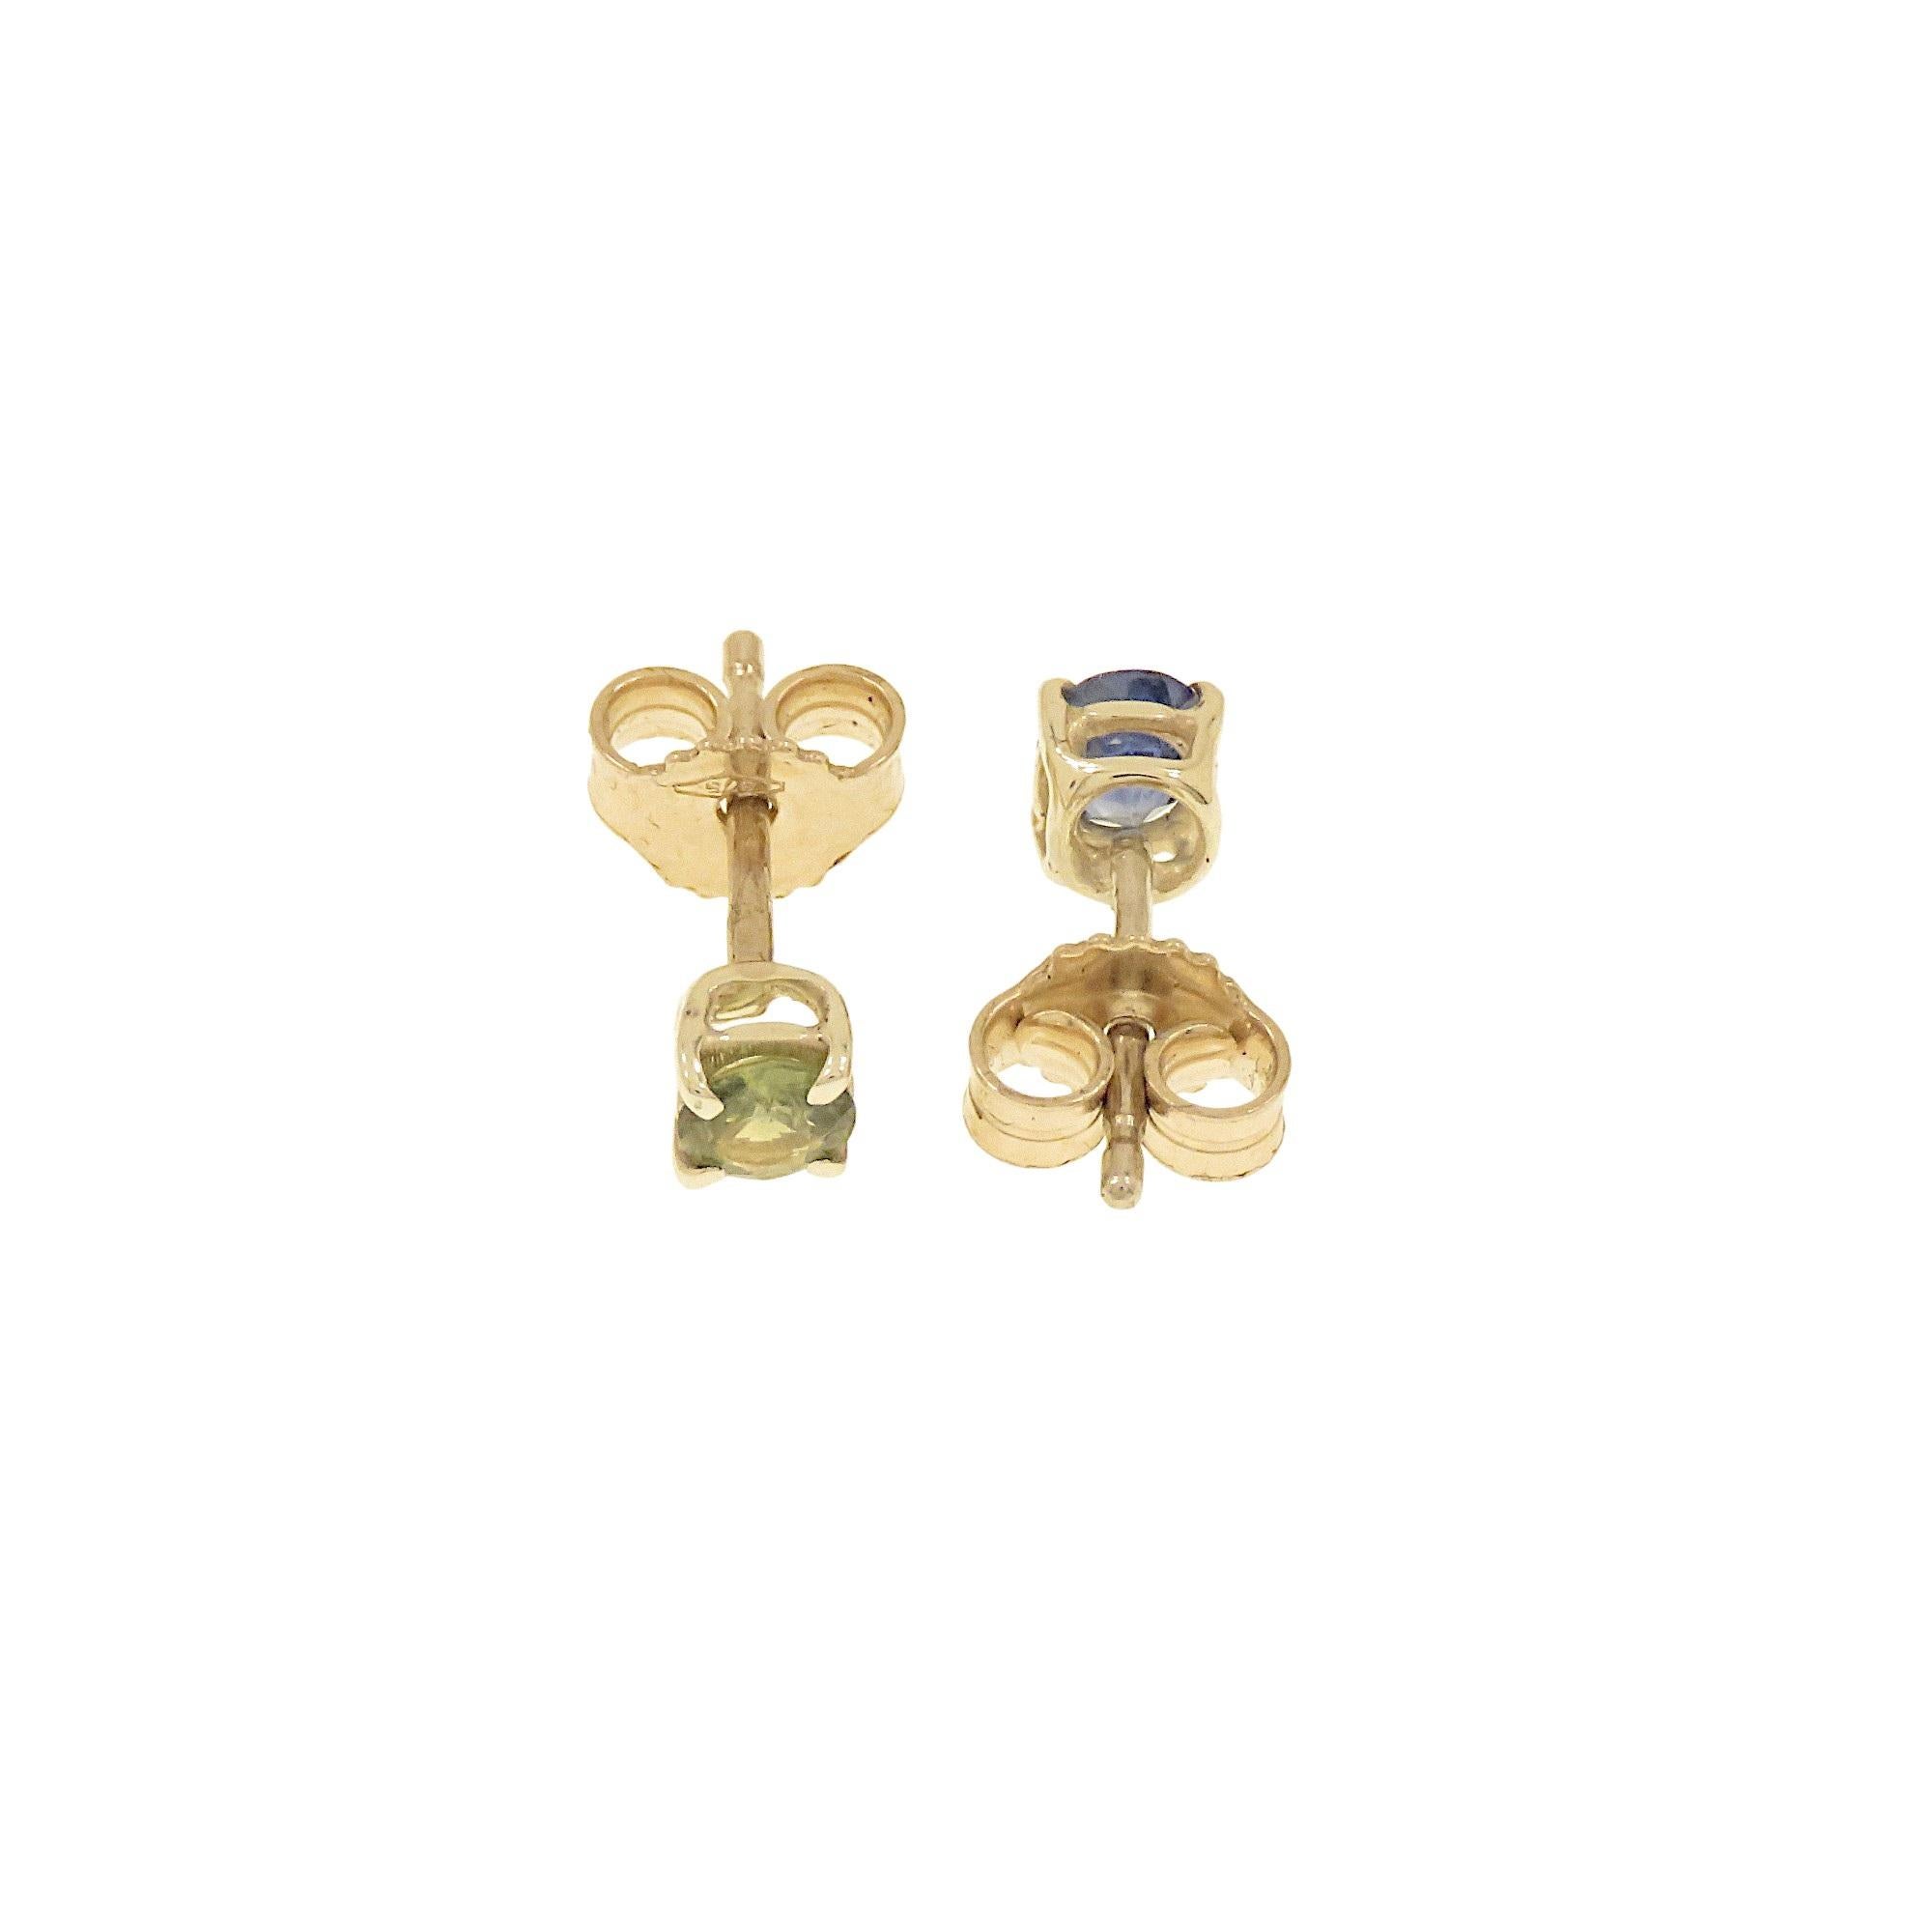 Minimalistische Ohrringe von Botta Gioielli in Mailand aus 9 Karat Weißgold mit zwei blauen und grünen Saphiren im Brillantschliff mit einem Durchmesser von 4 mm und einem Gesamtgewicht von 0,45 ct. Die Steine sind in einer Backenfassung mit einer